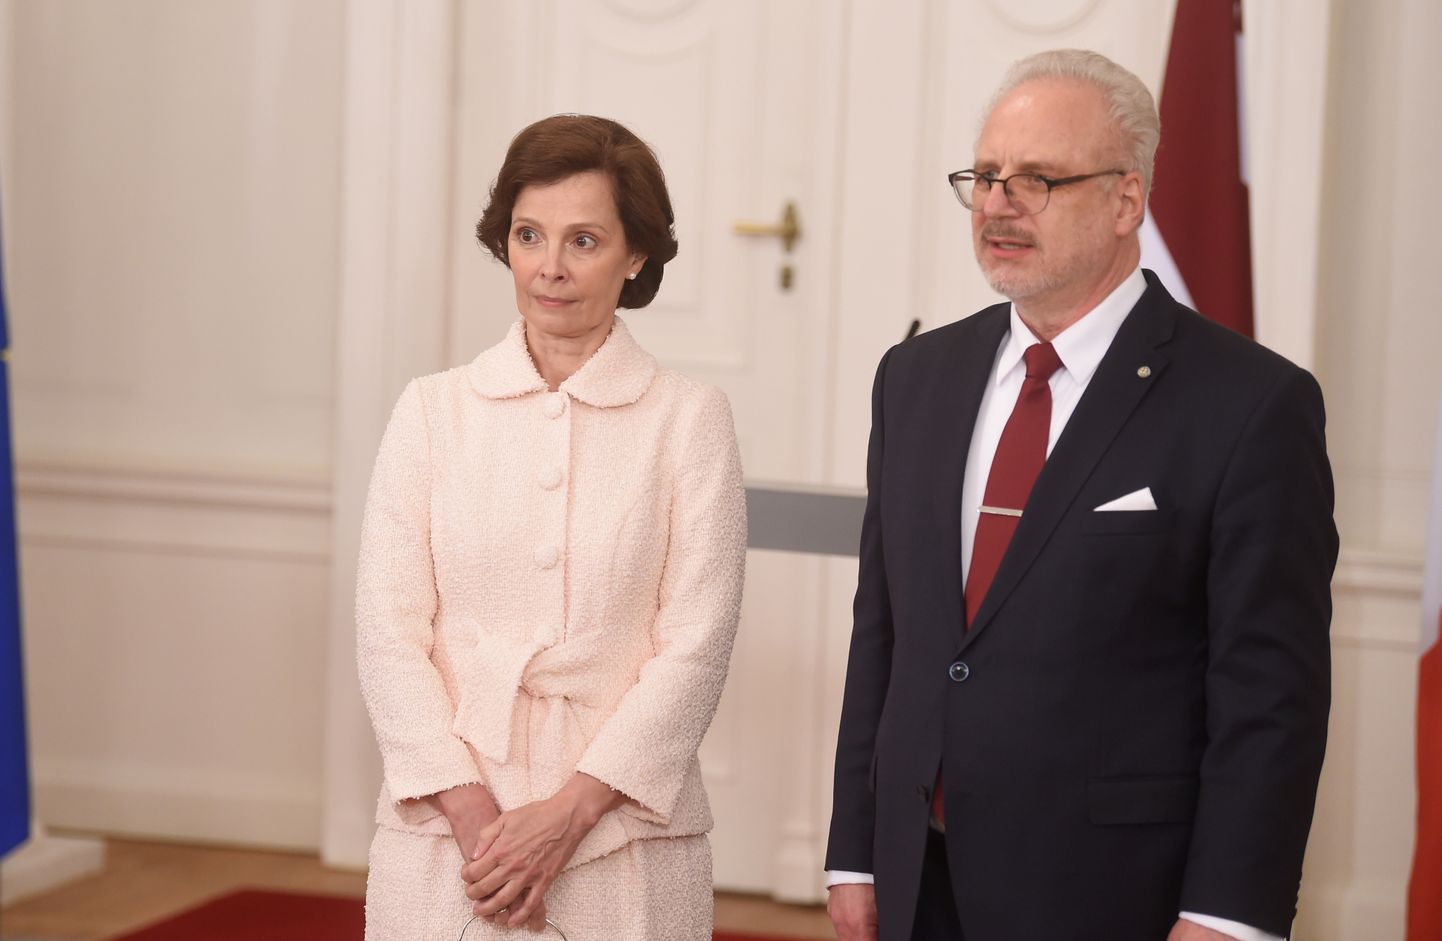 Latvijas prezidents Egils Levits un prezidenta kundze Andra Levite